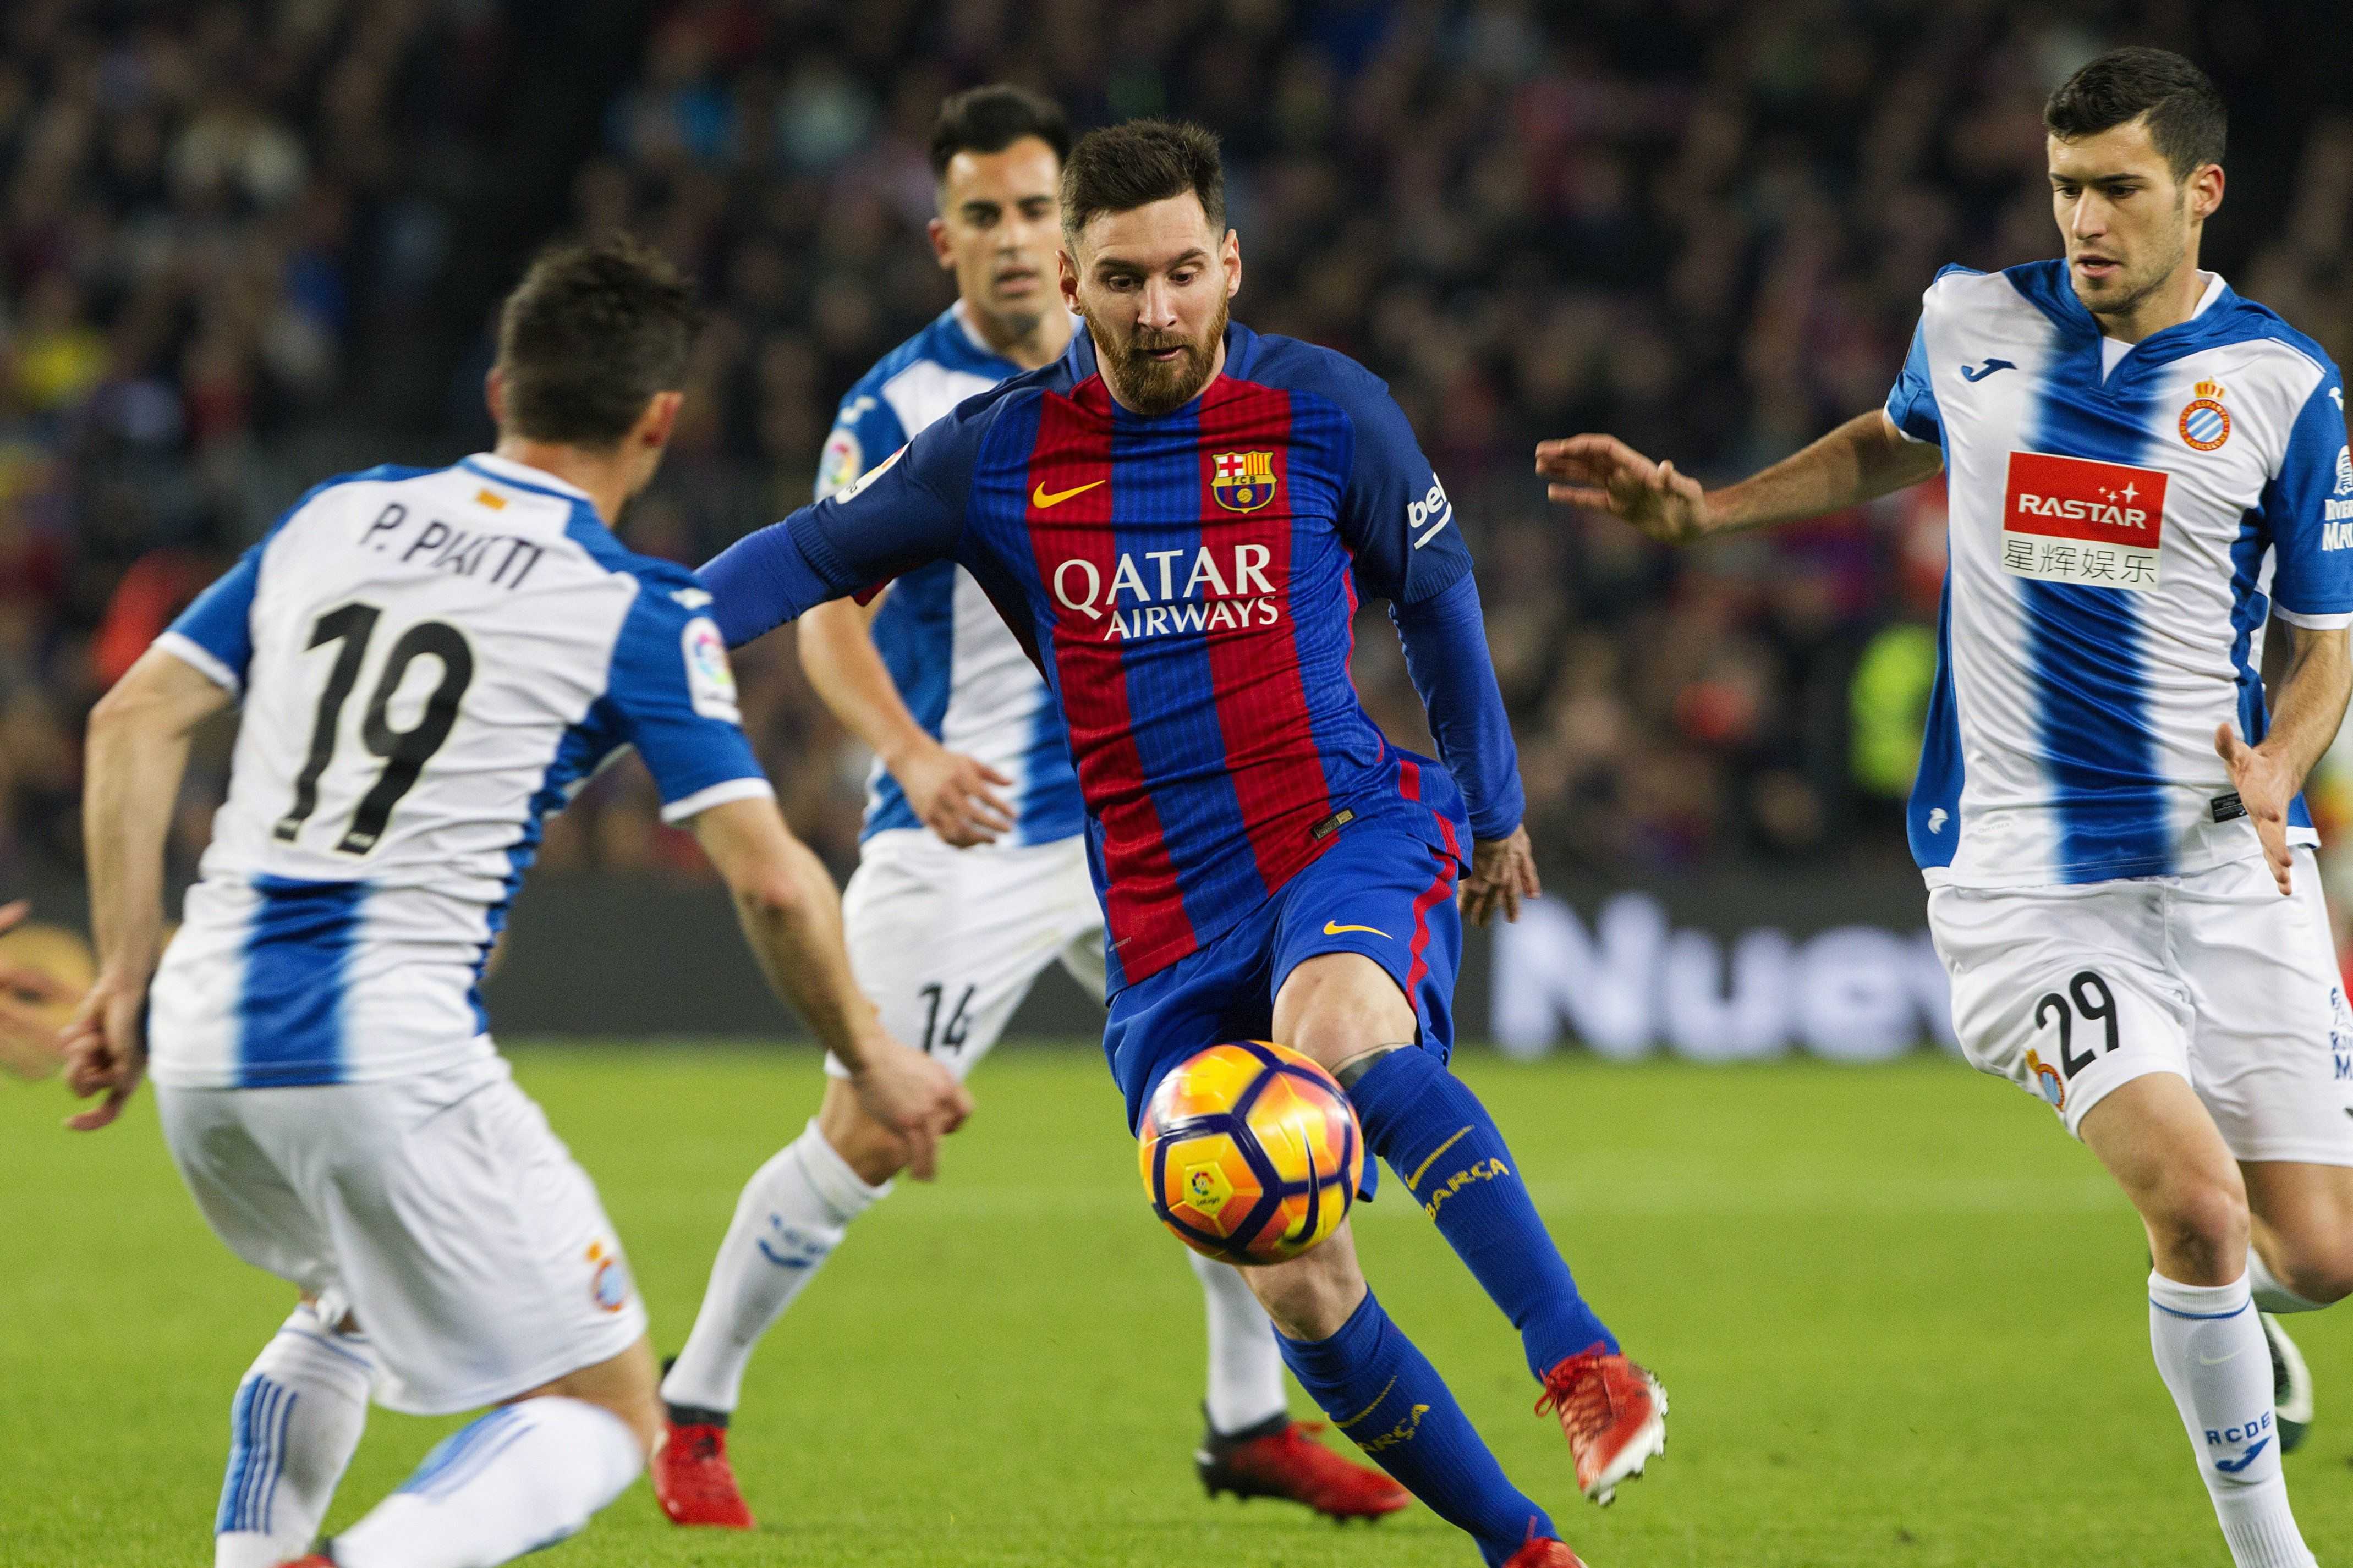 La jugada de Messi contra el Espanyol, desde todos los ángulos